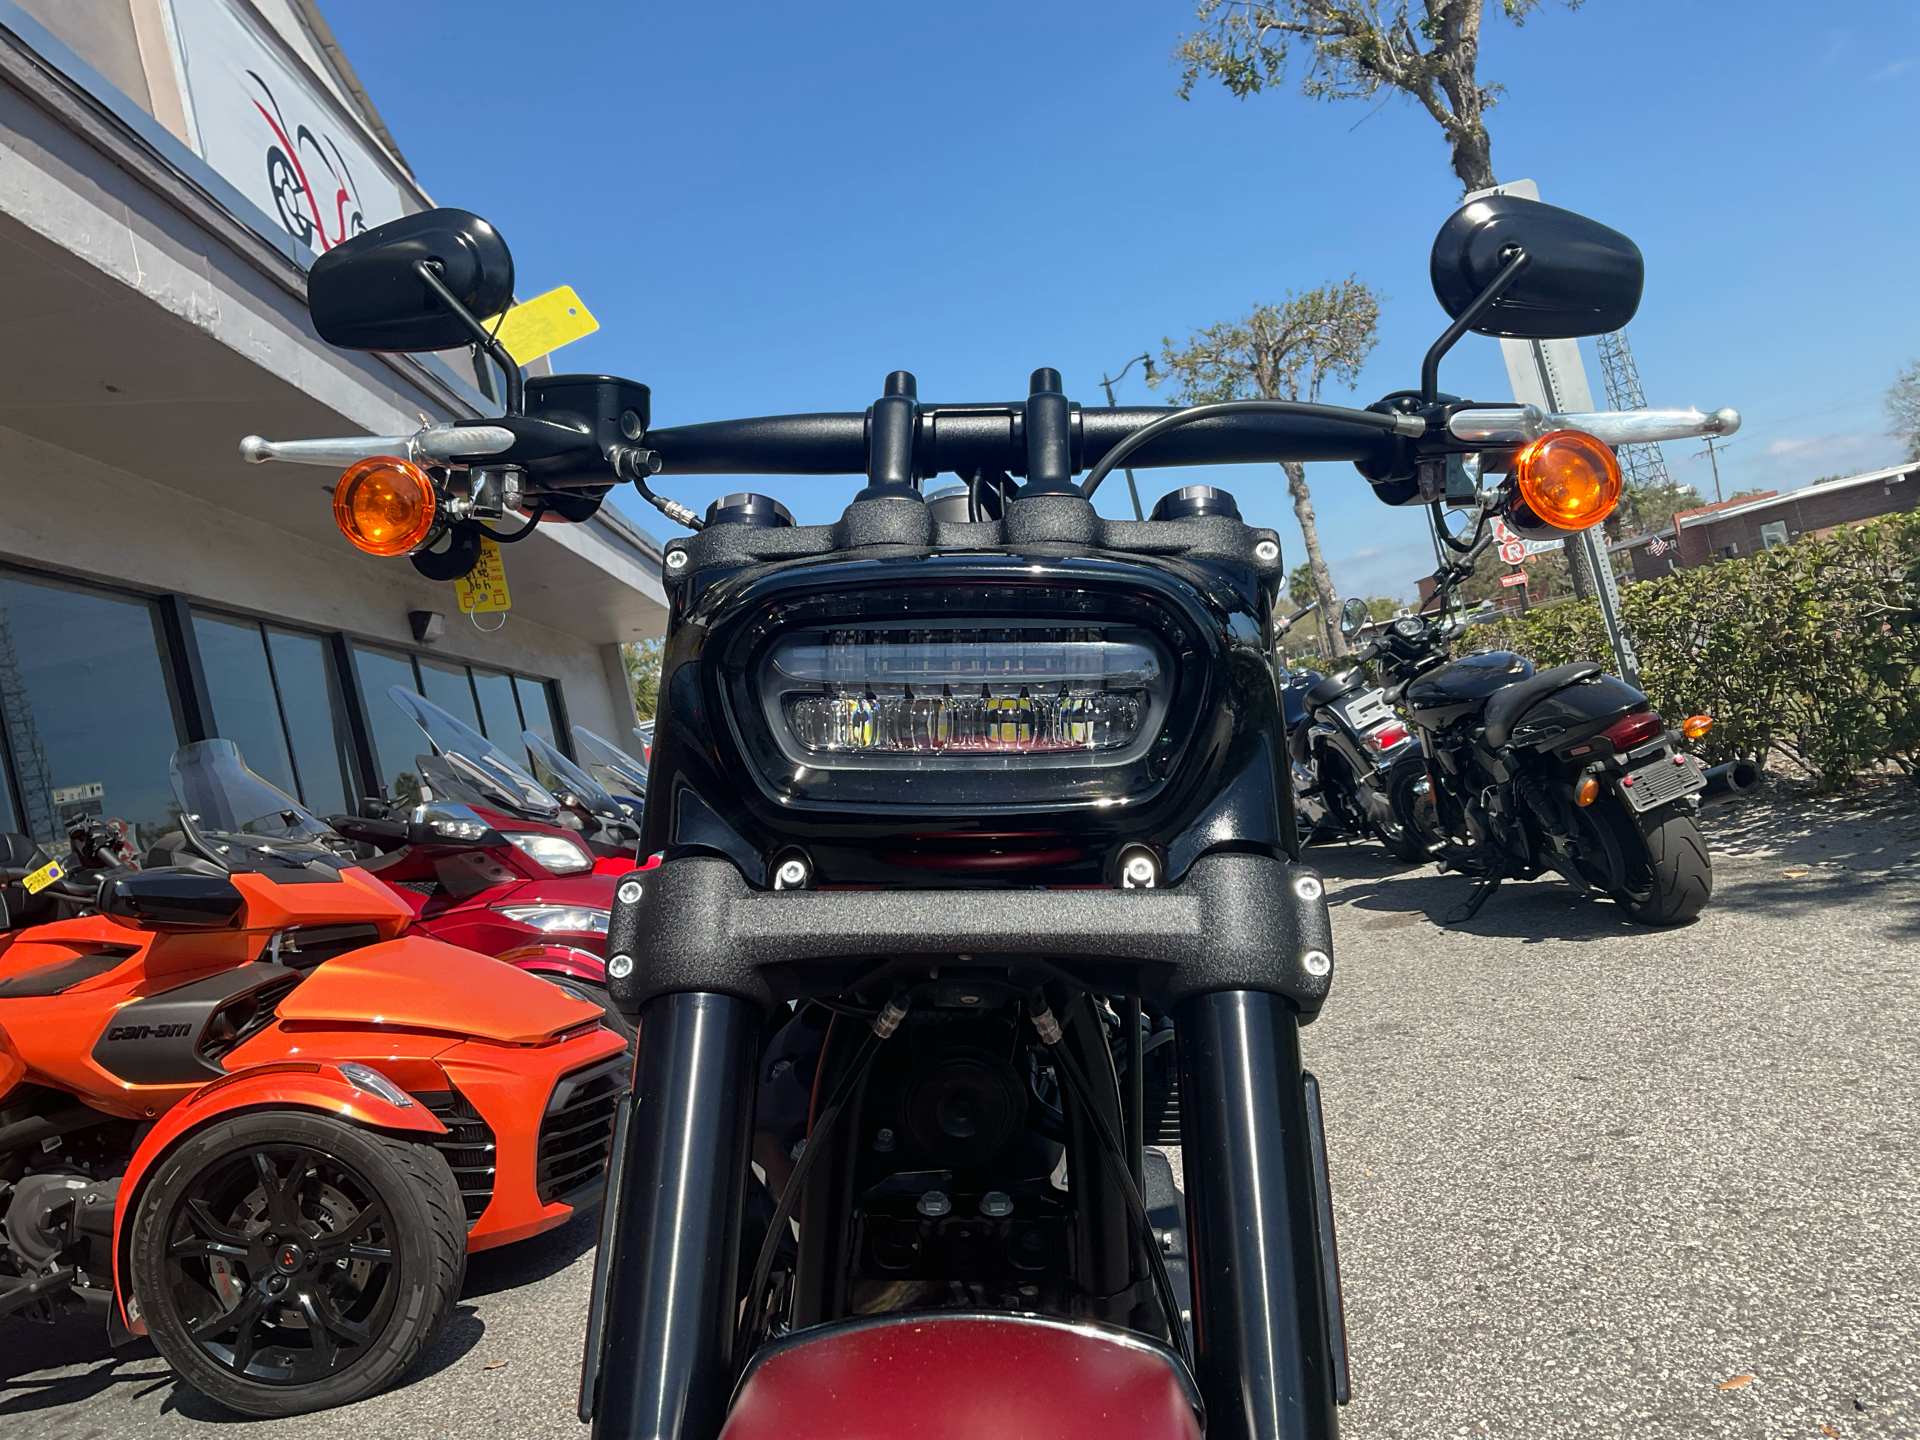 2019 Harley-Davidson Fat Bob® 107 in Sanford, Florida - Photo 16